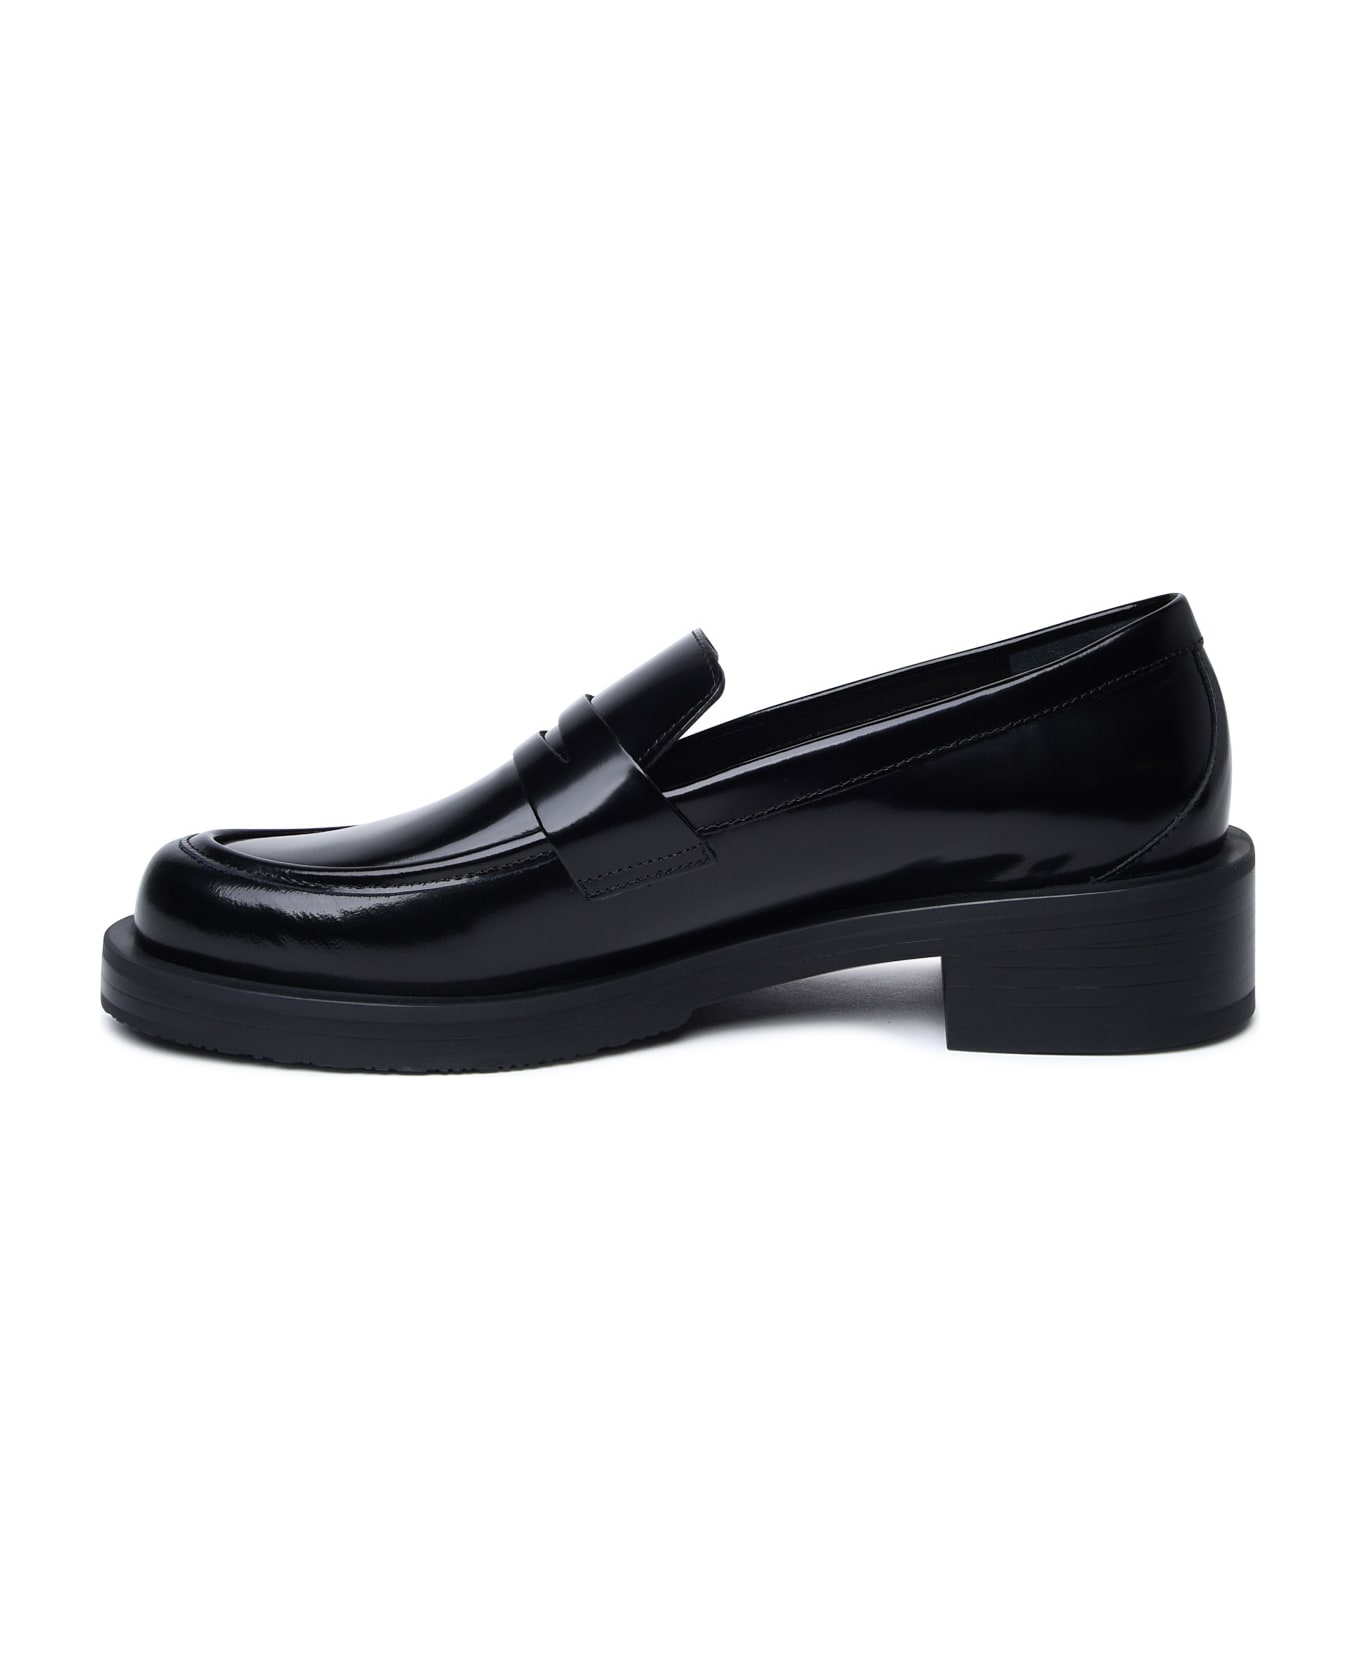 Stuart Weitzman Black Shiny Leather Loafers - Black ハイヒール